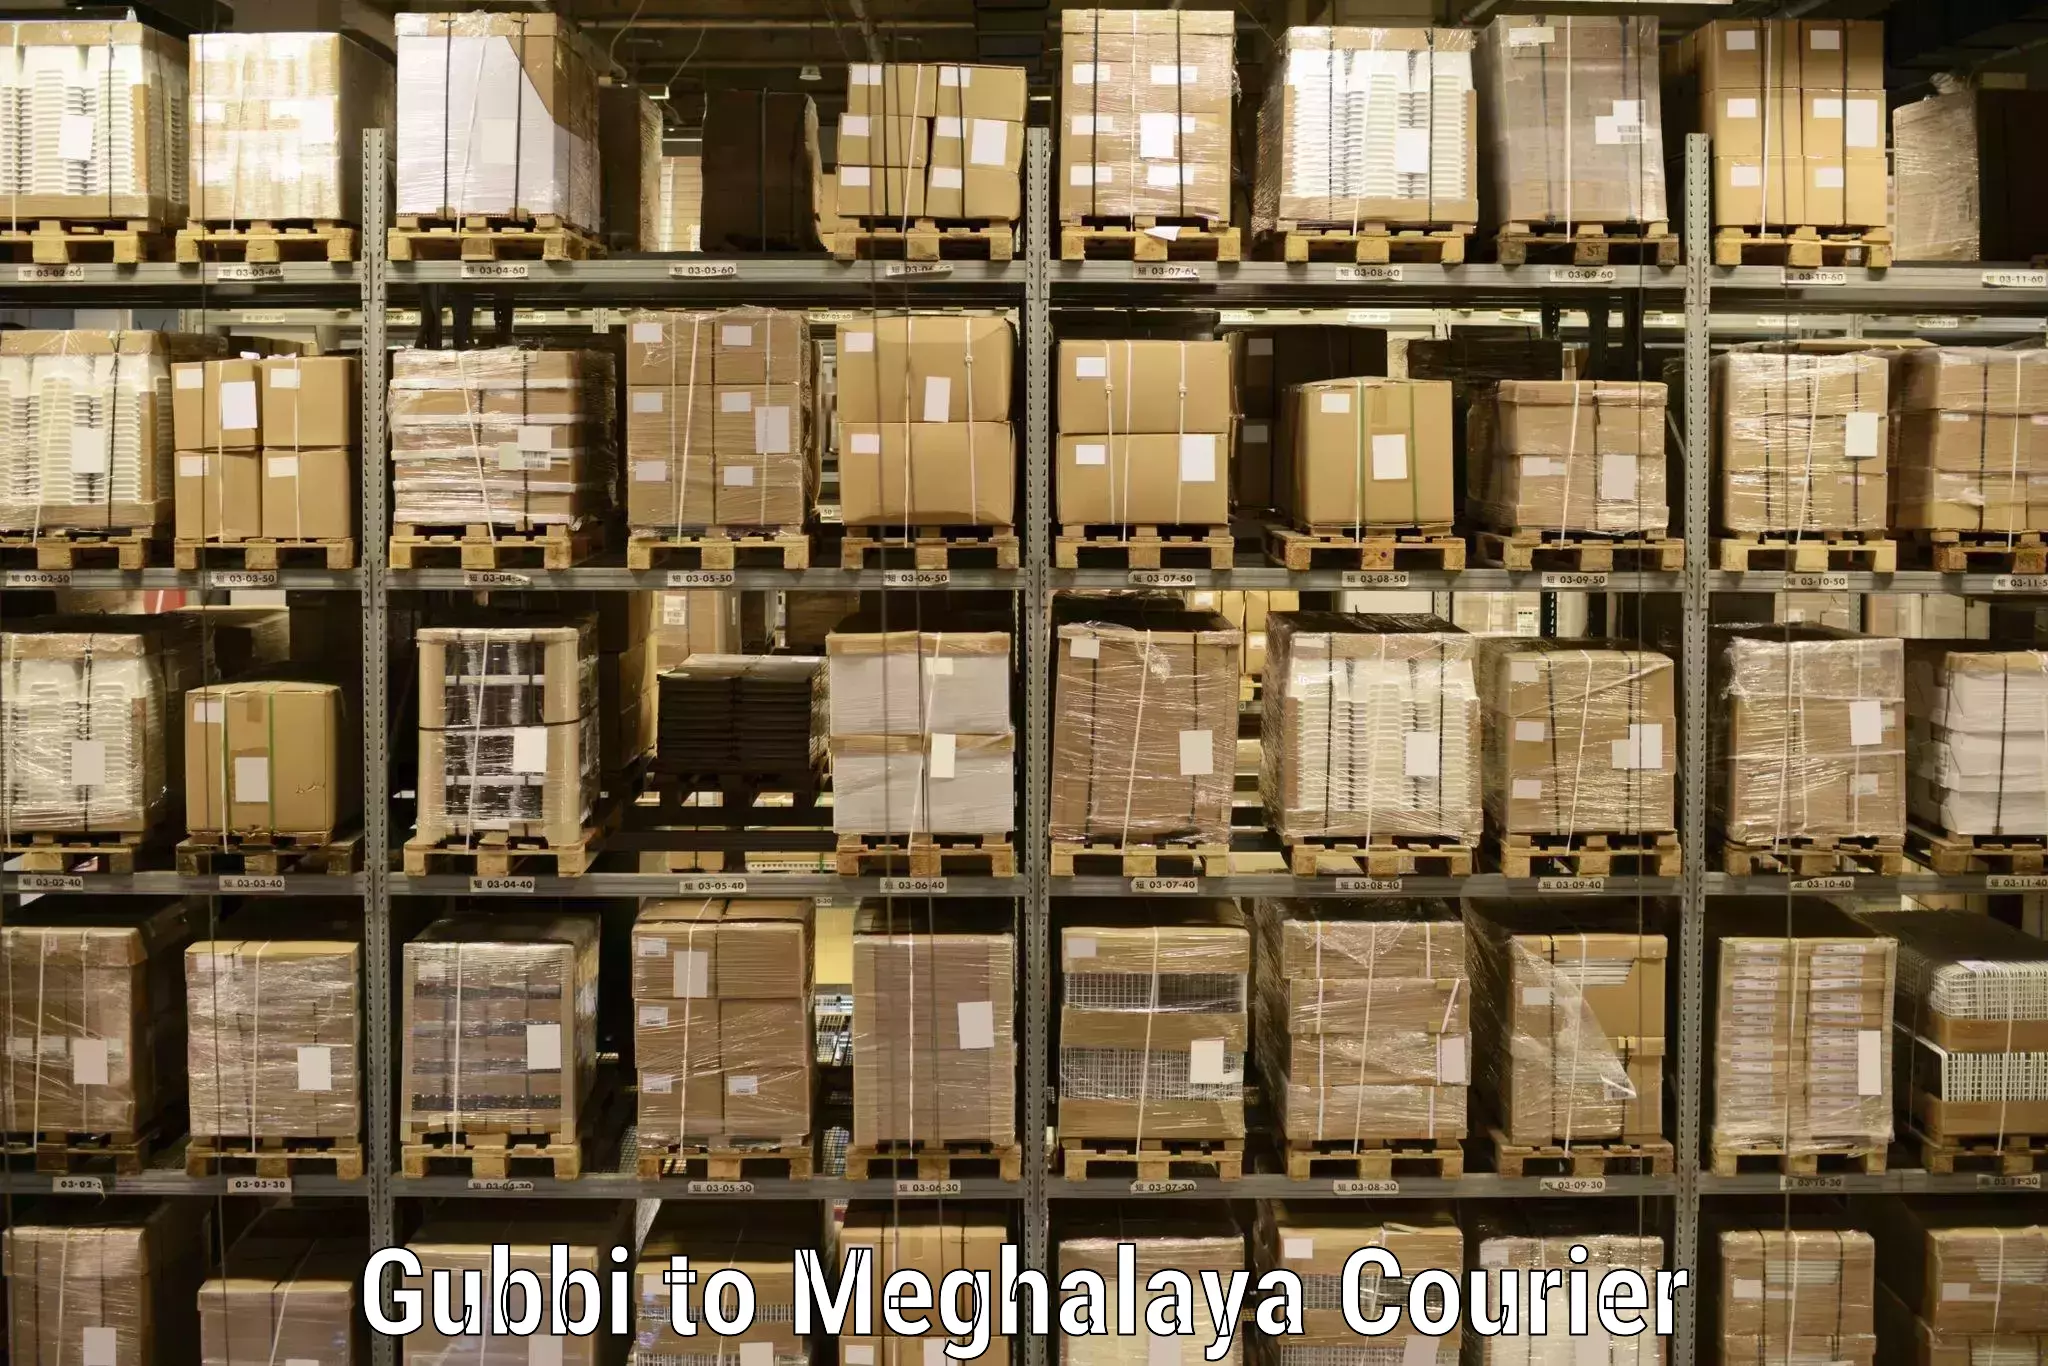 Pharmaceutical courier Gubbi to Shillong